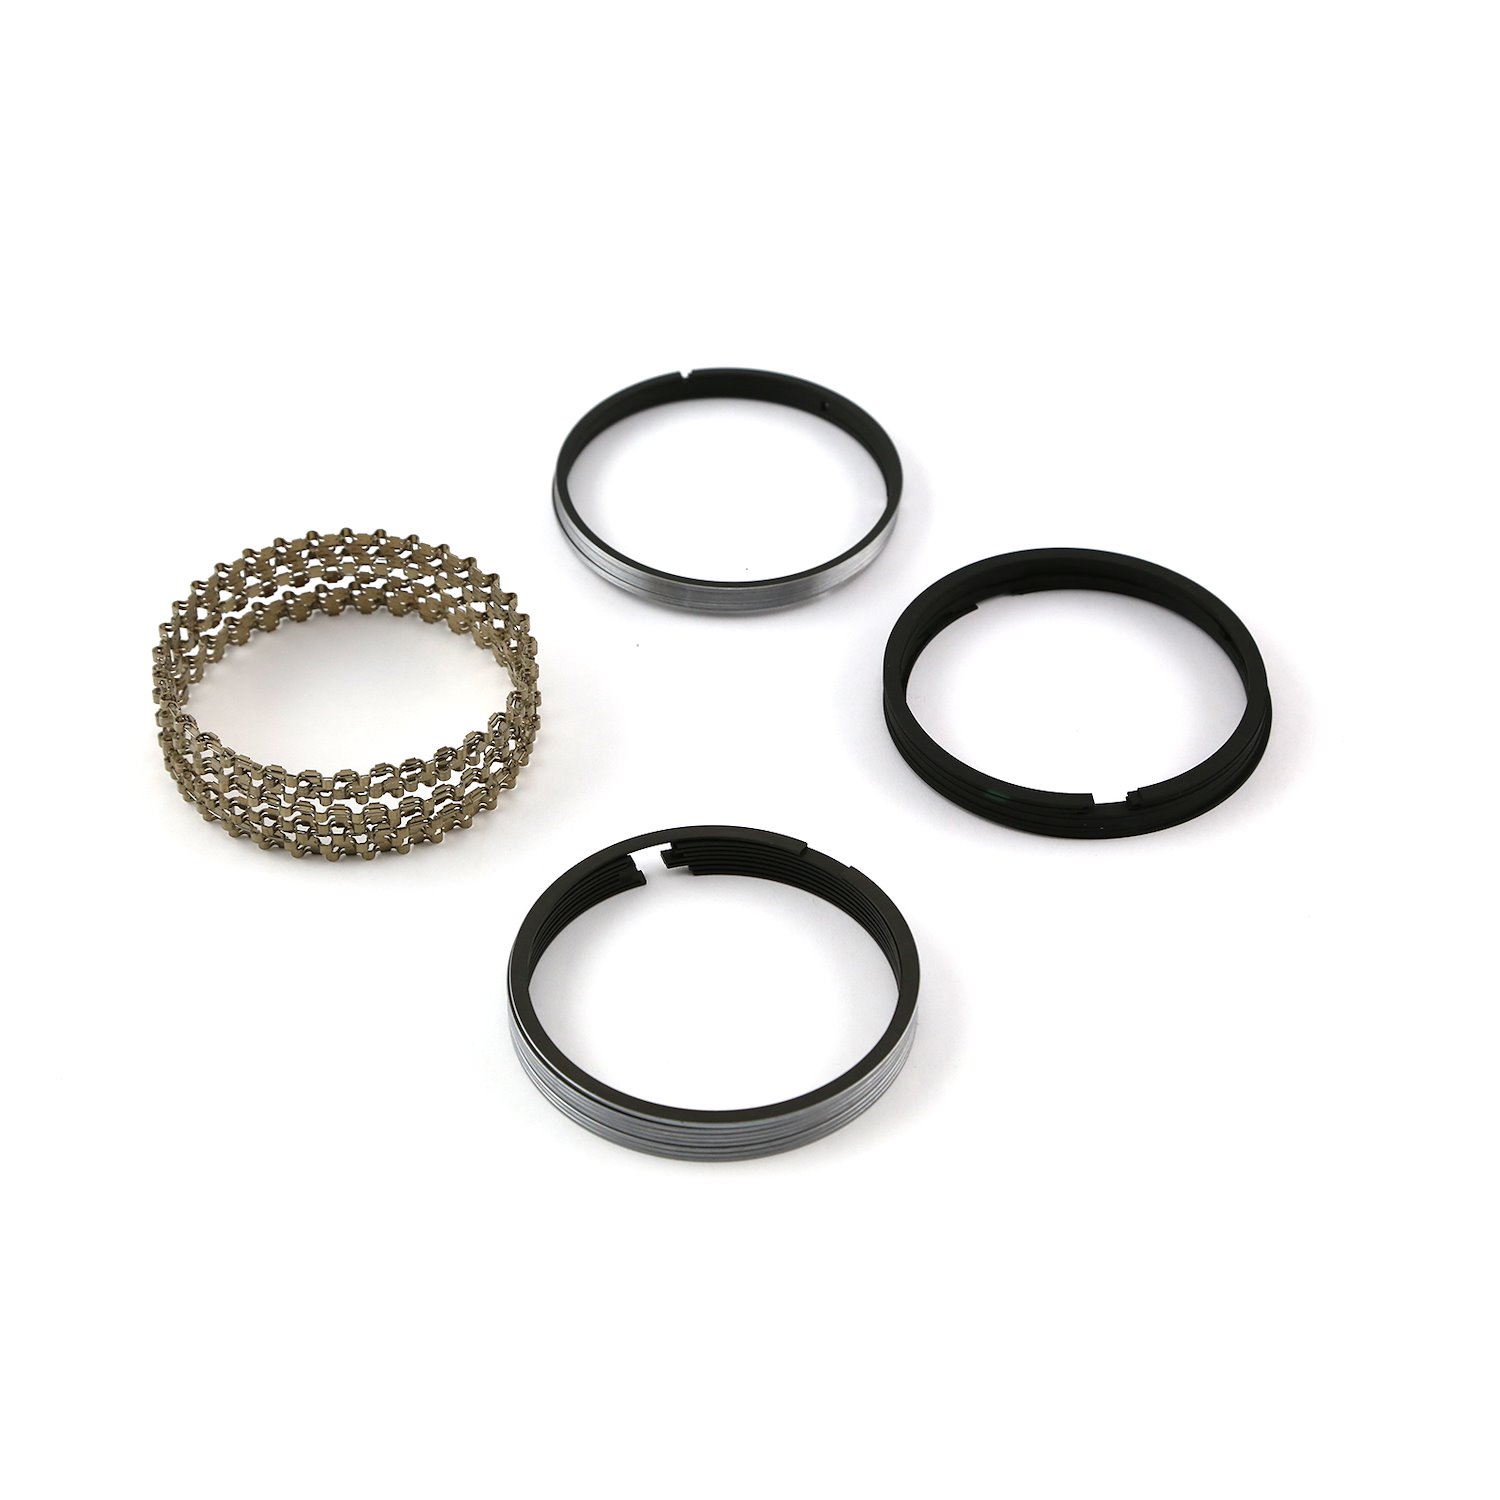 4.125 Bore - 1/16 - 1/16 - 3/16 Plasma Moly Piston Ring Set - Zero Gap